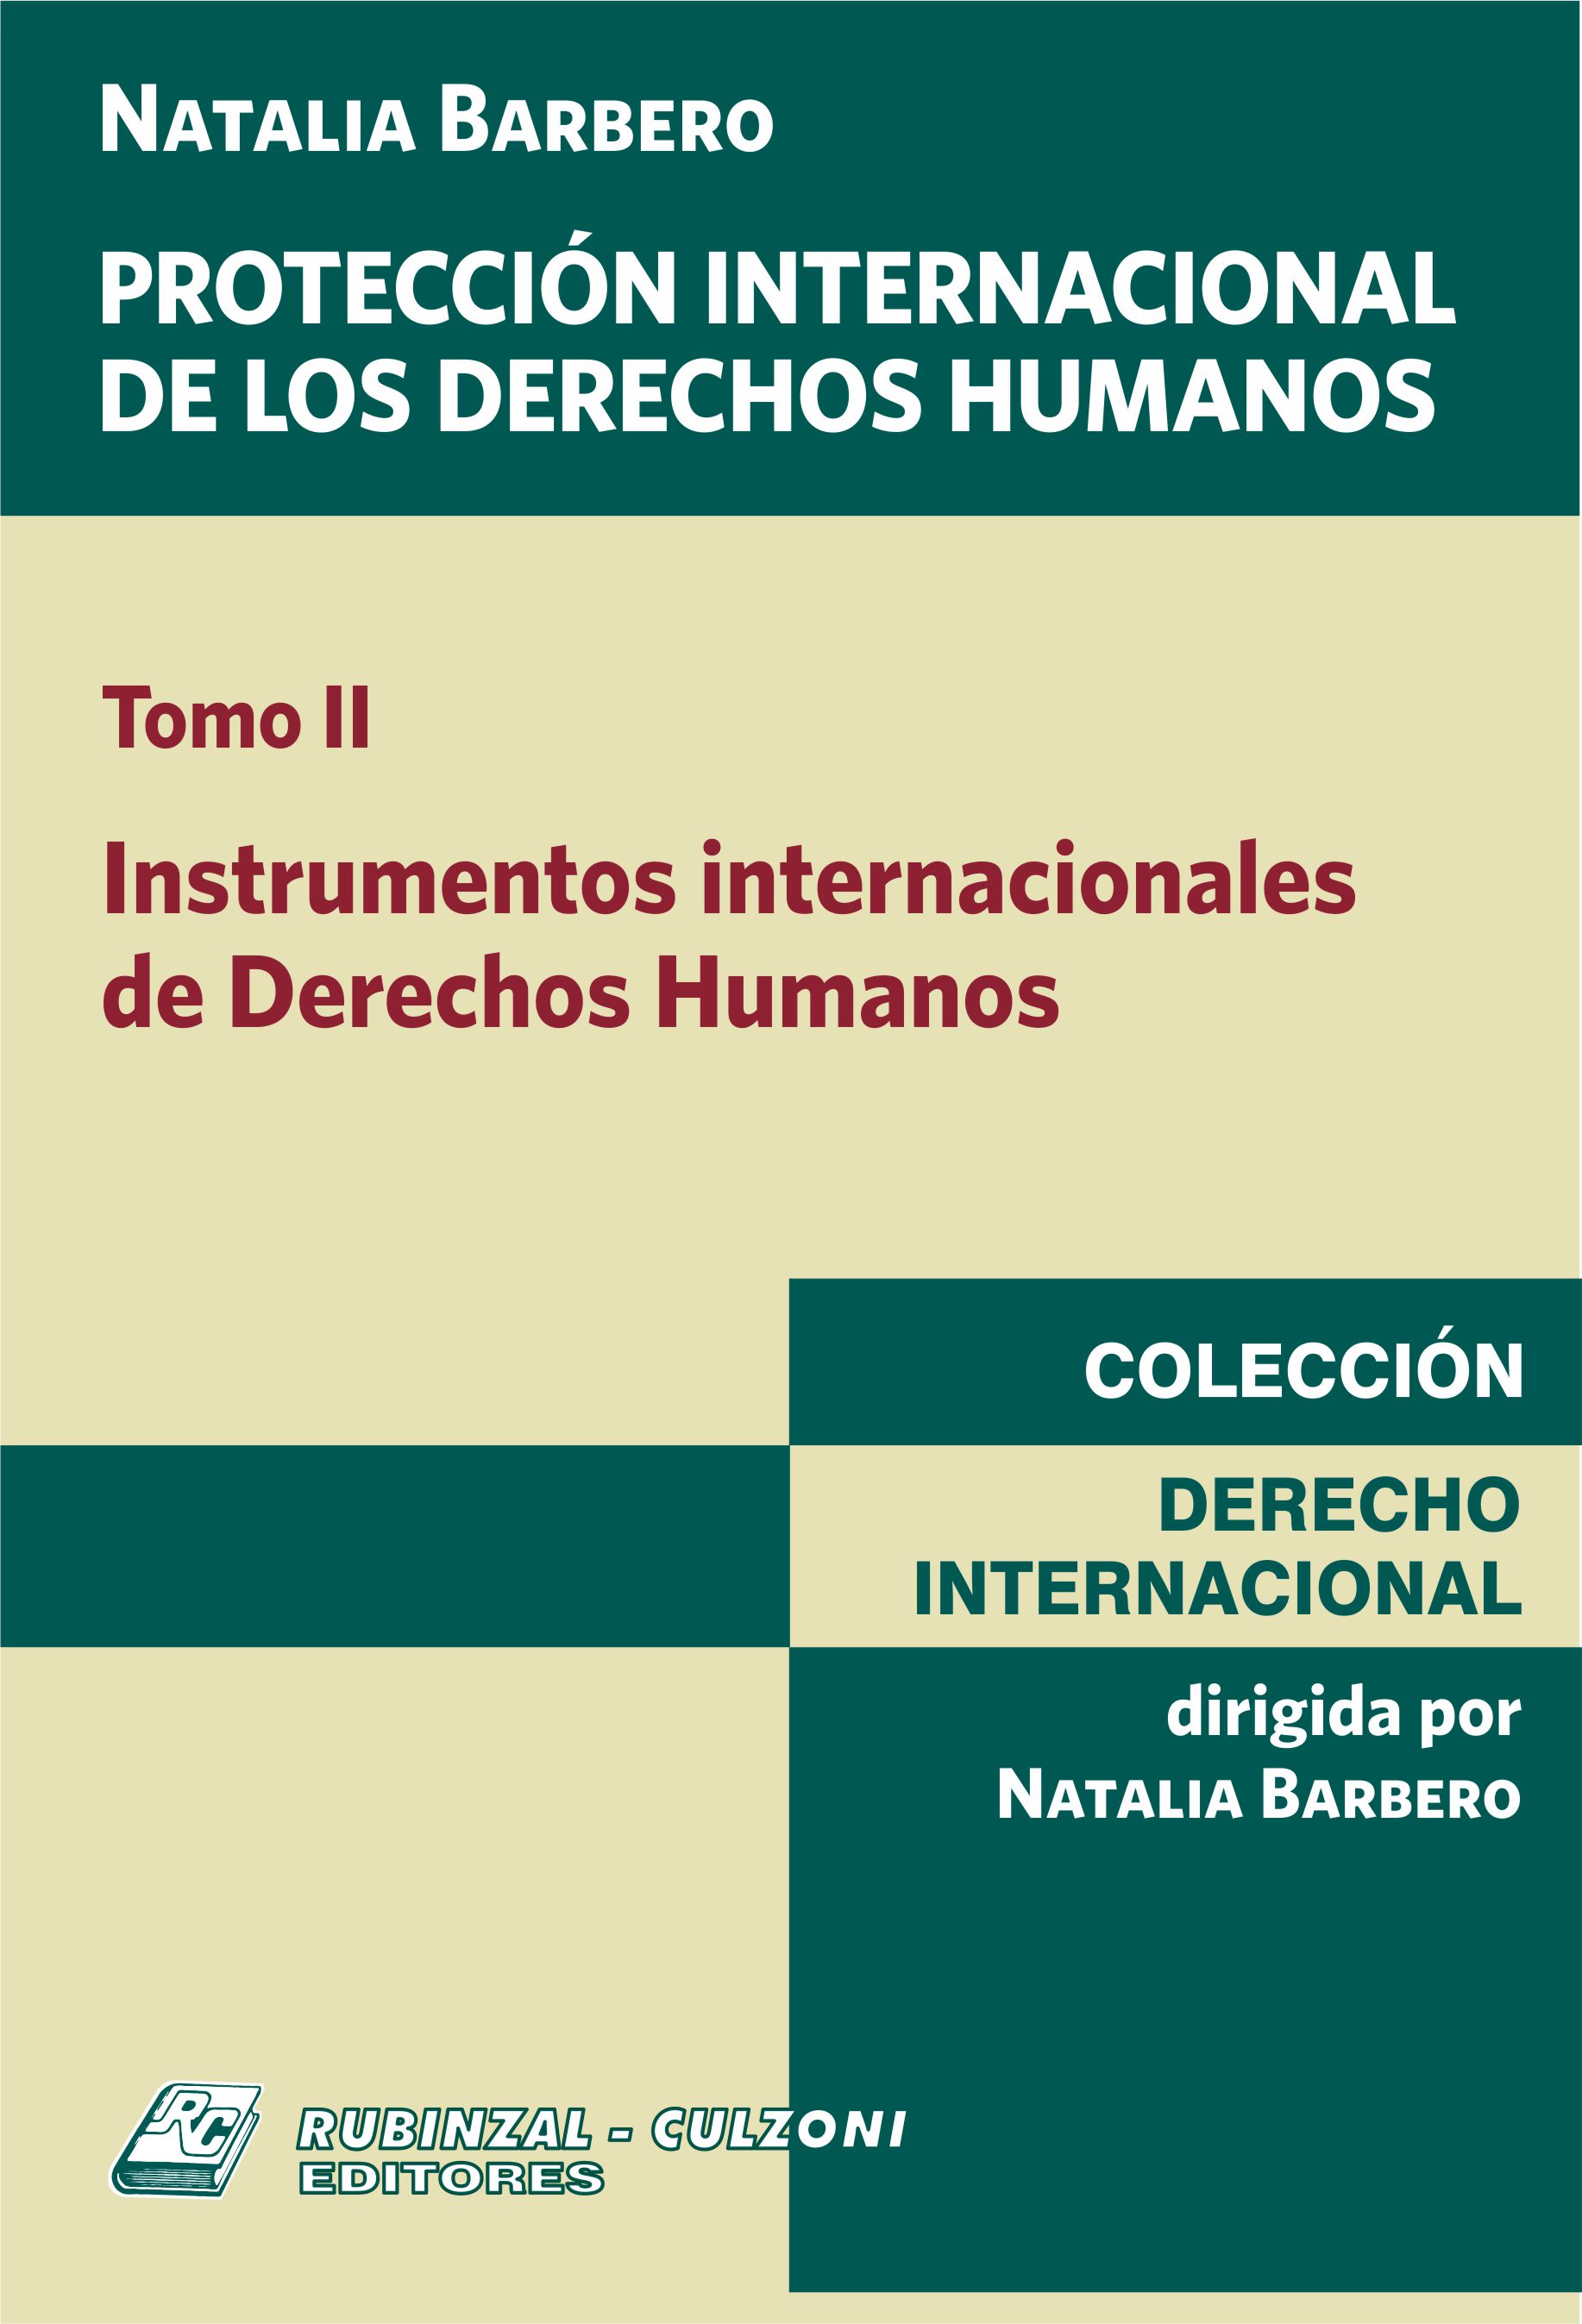 Protección Internacional de los Derechos Humanos. - Tomo II. Instrumentos internacionales de Derechos Humanos.